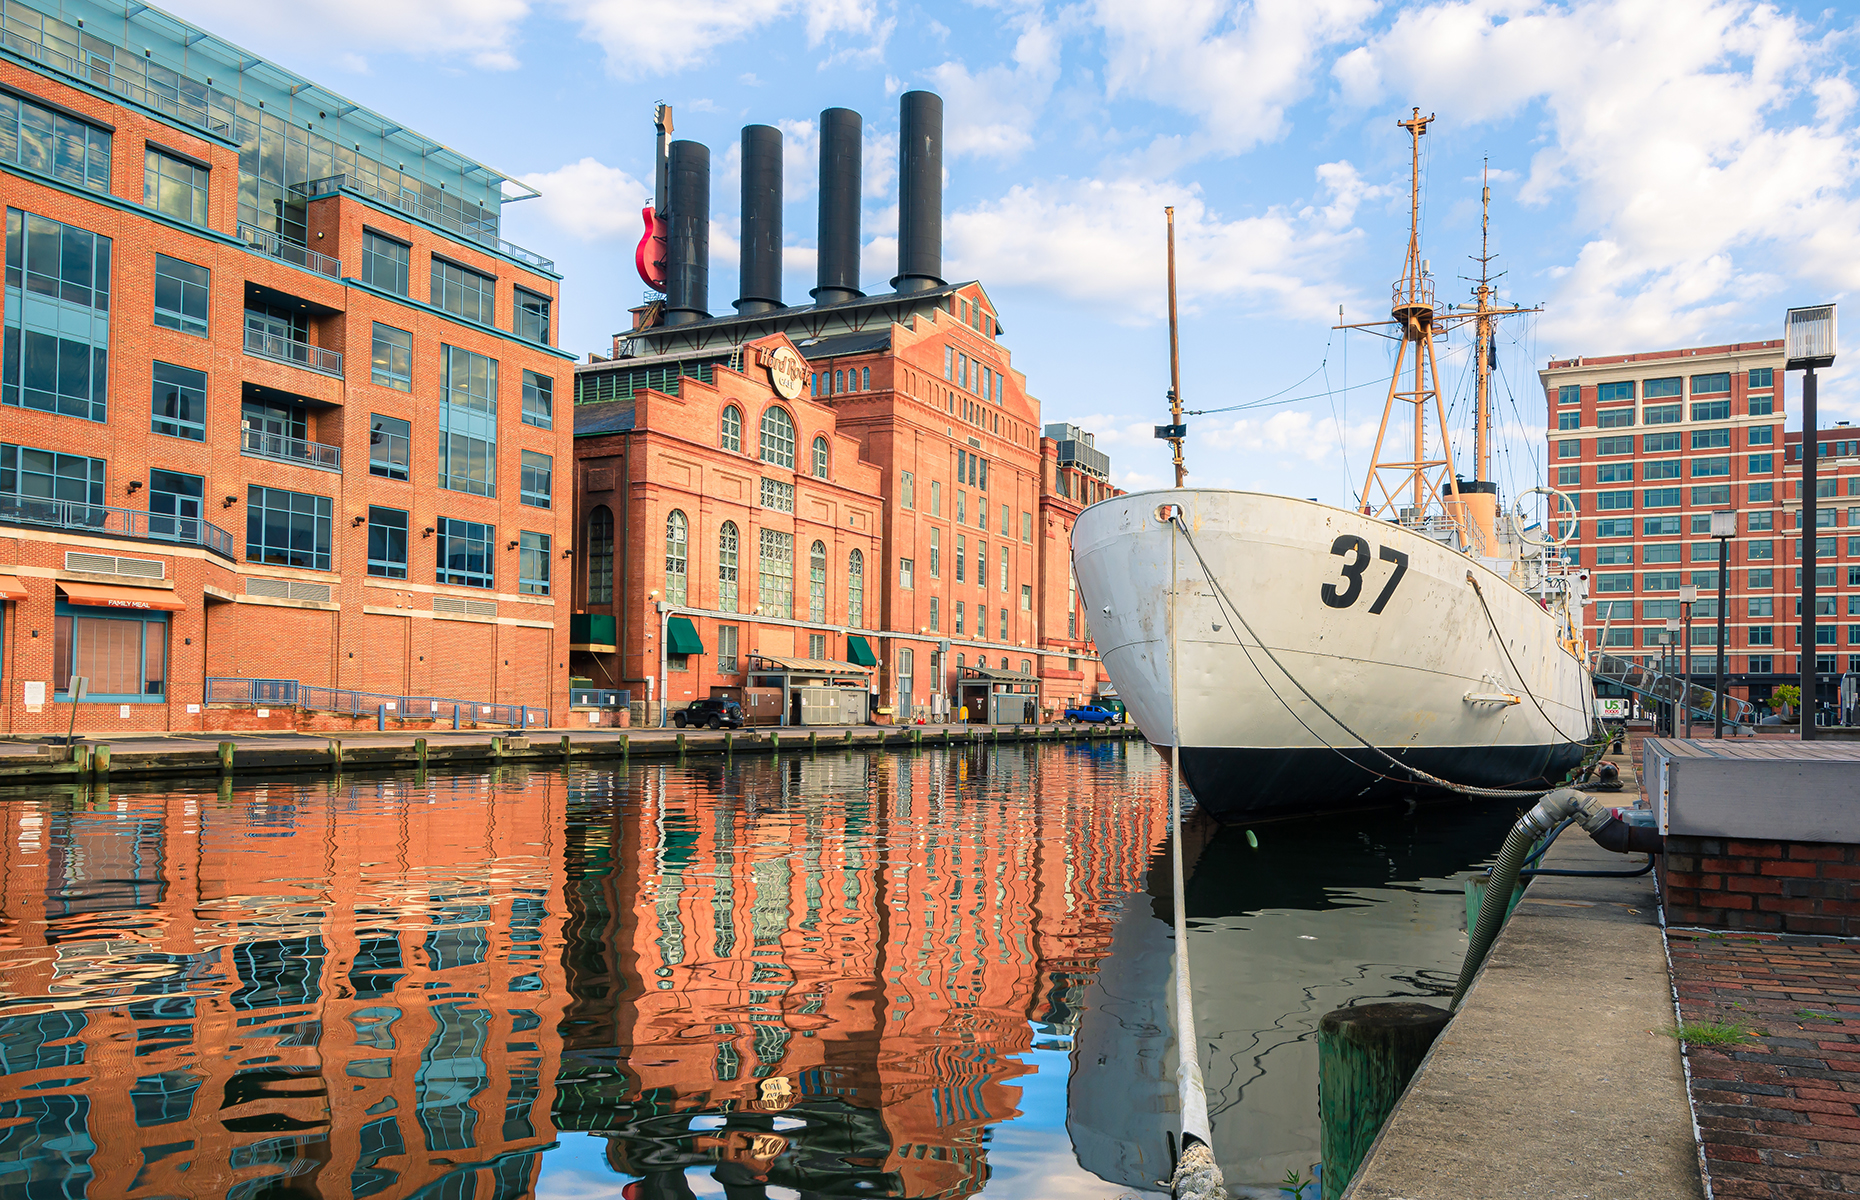 Inner Harbor, Baltimore. (Image: Chansak Joe/Shutterstock)